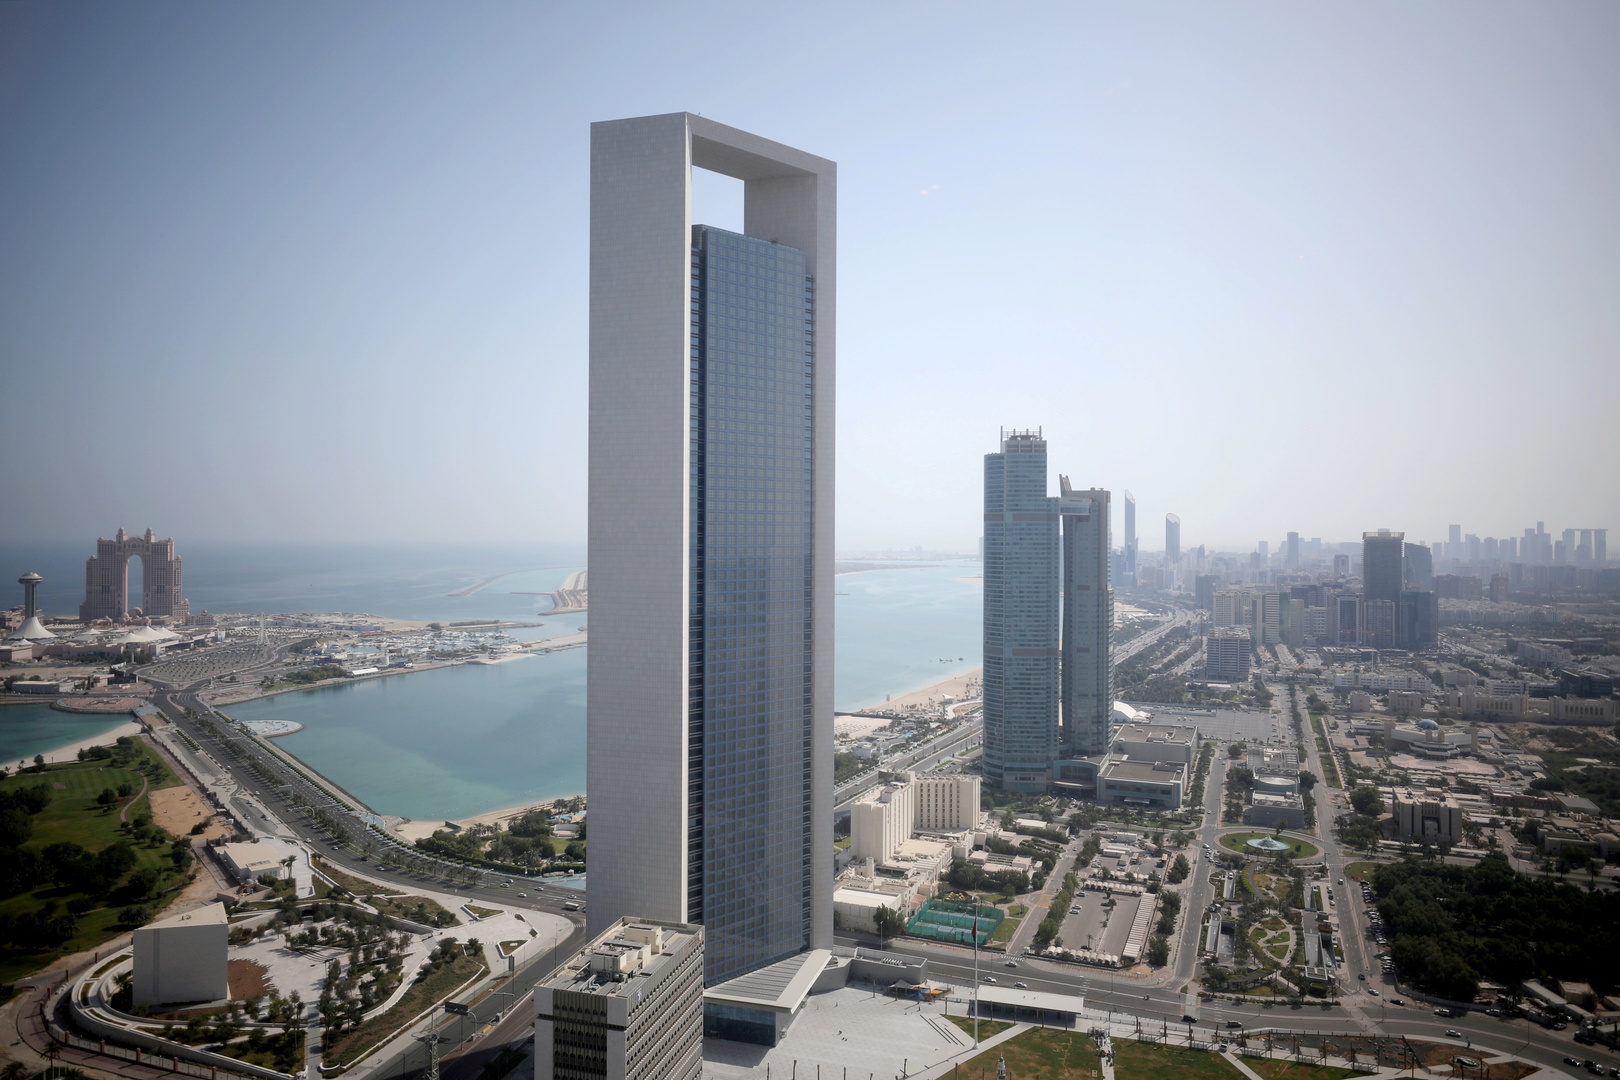 أبو ظبي أول مدينة في العالم تتسلم عقارا جديدا ضد 